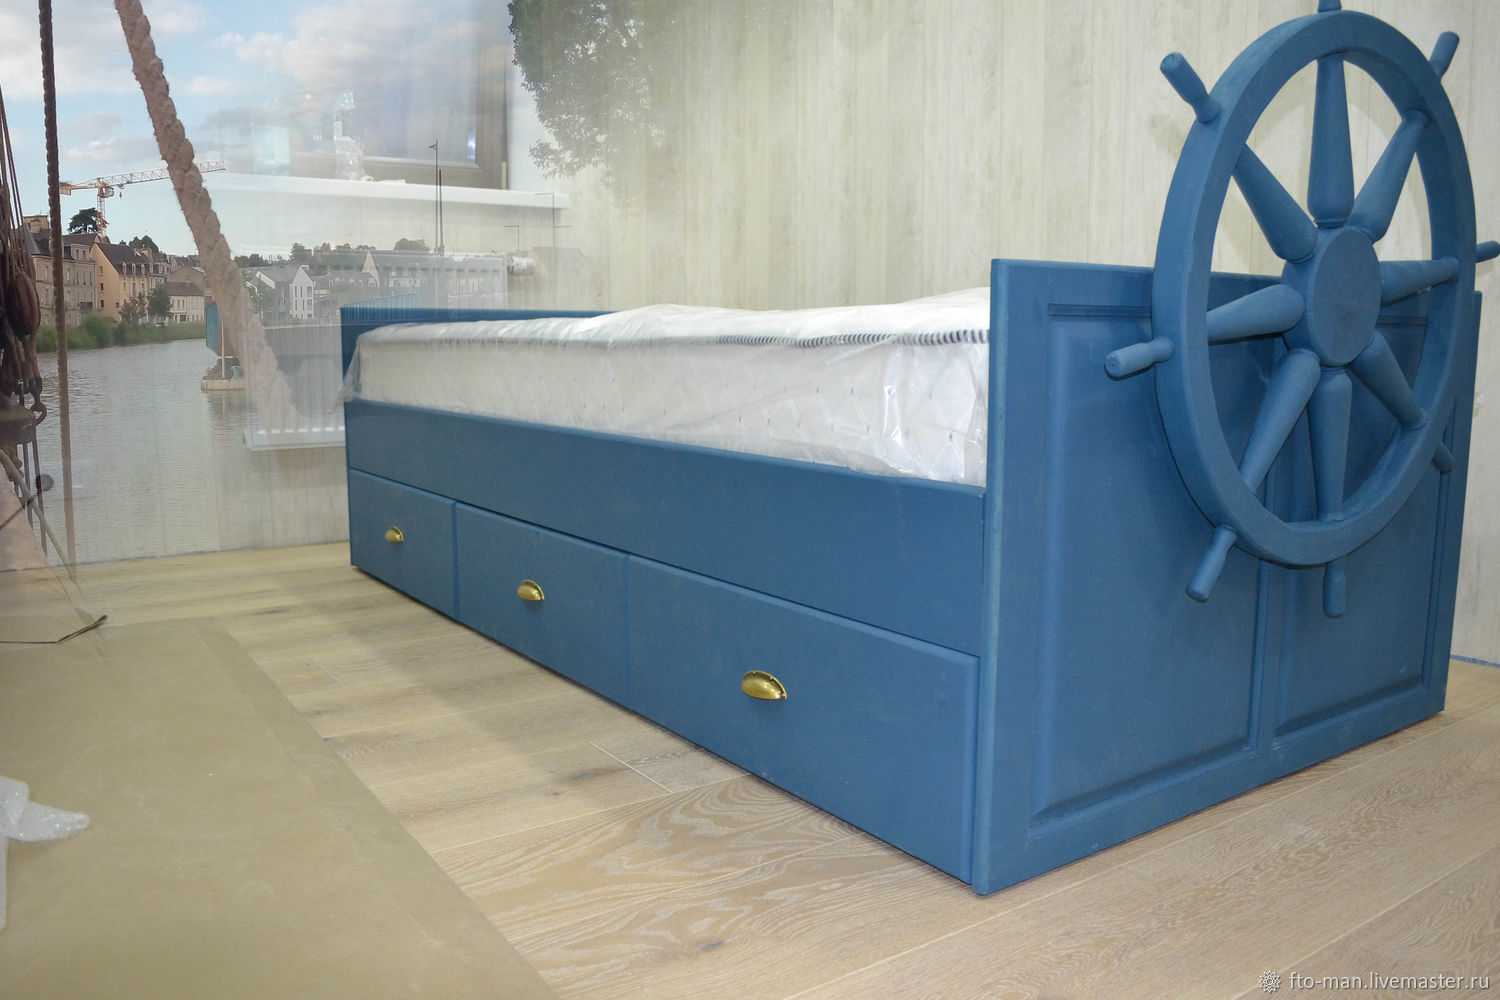 Детские кровати, популярные конструкции, цвета, материалы изготовления